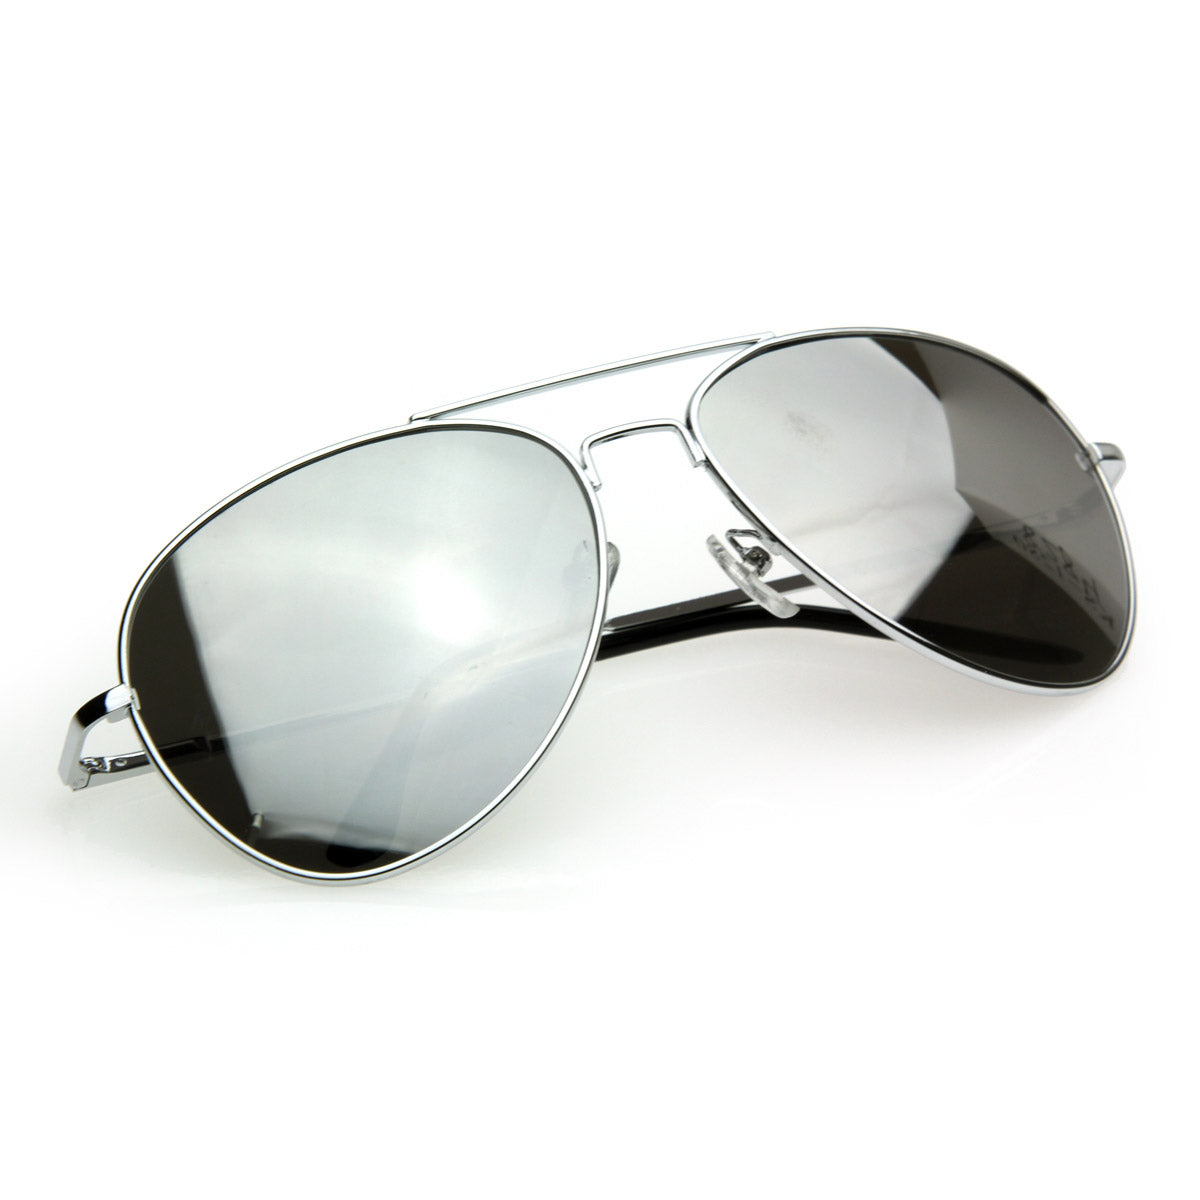 FULL MIRROR Mirrored Sunglasses Metal Aviator